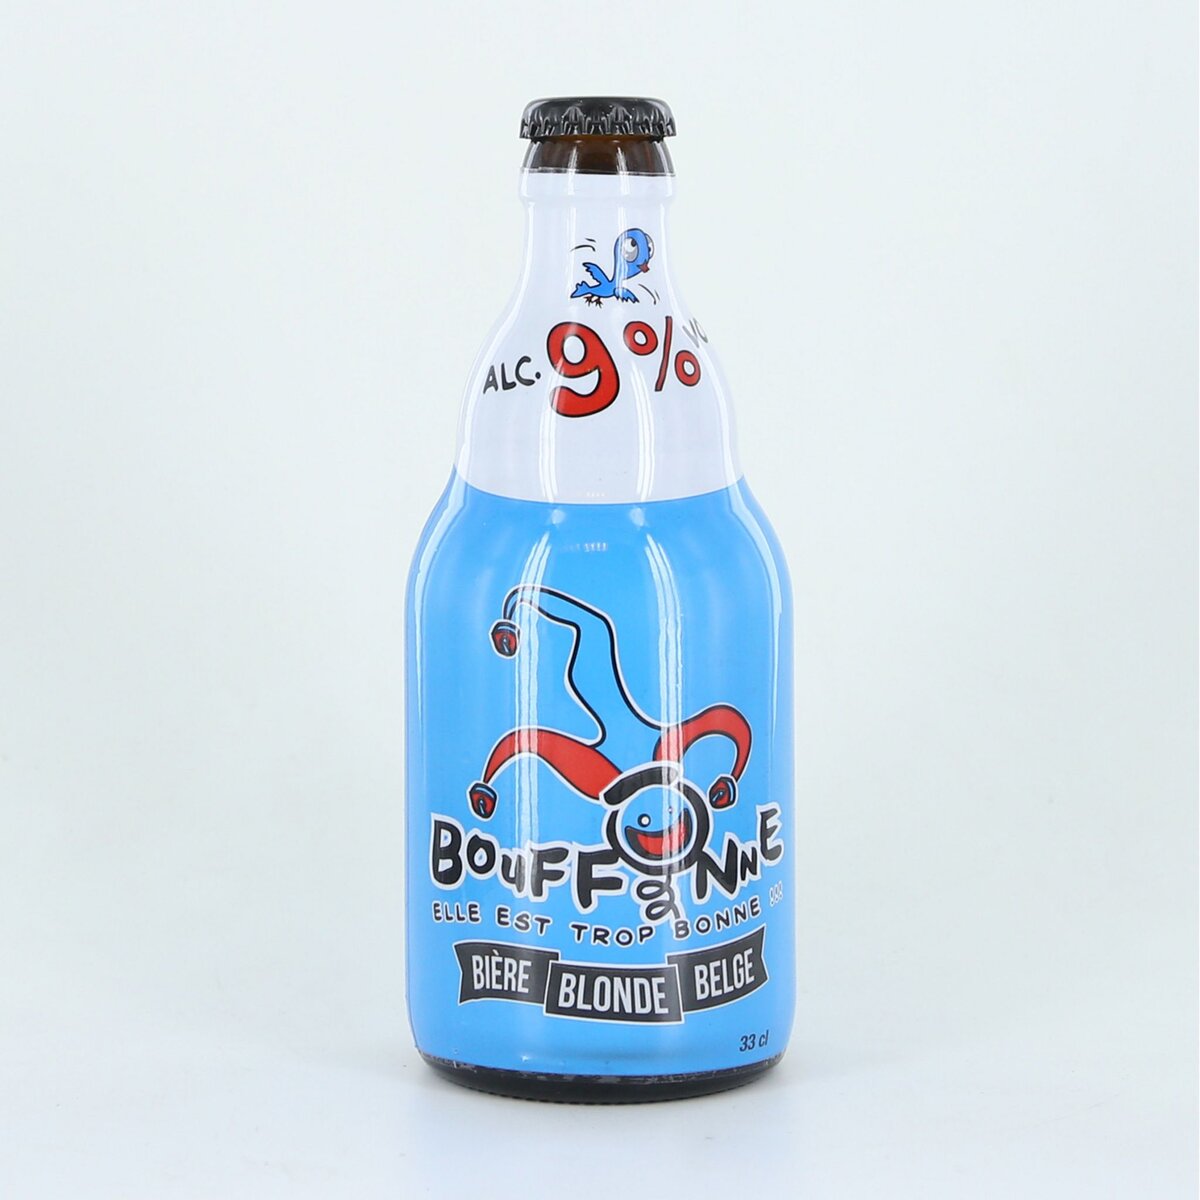 LA BOUFONNE Bière blonde belge 5,2% bouteille 33cl